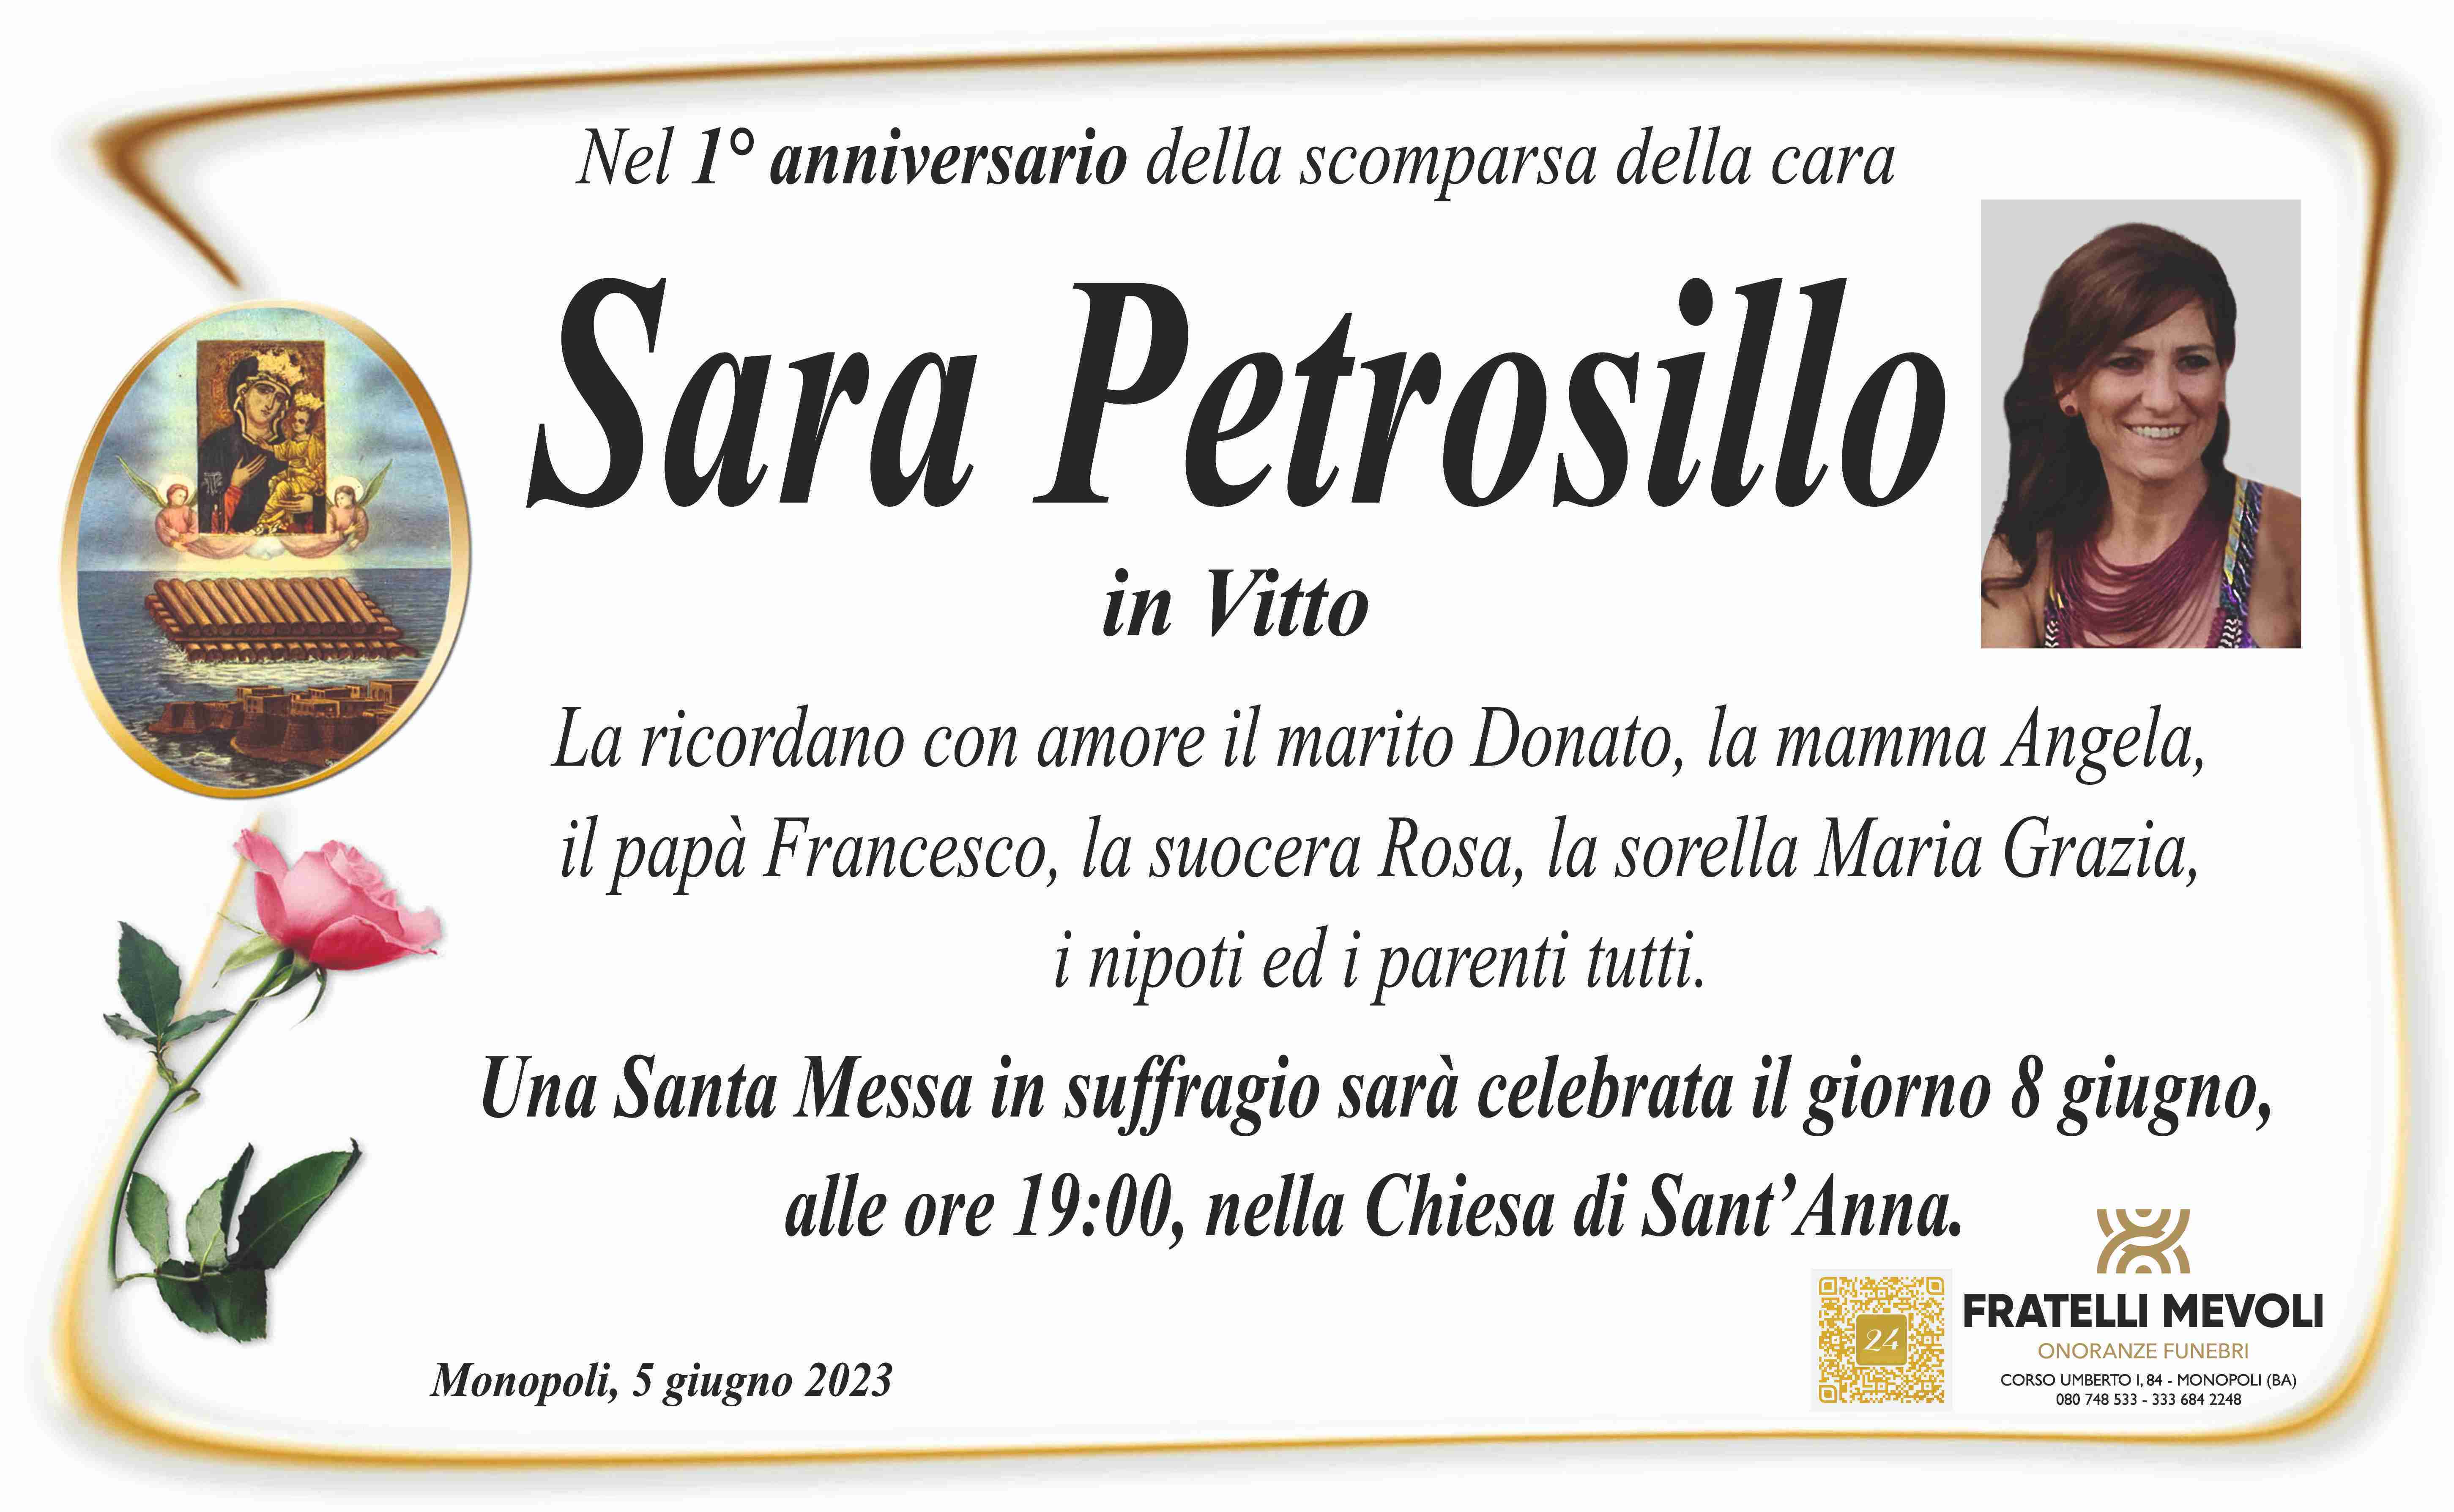 Sara Petrosillo